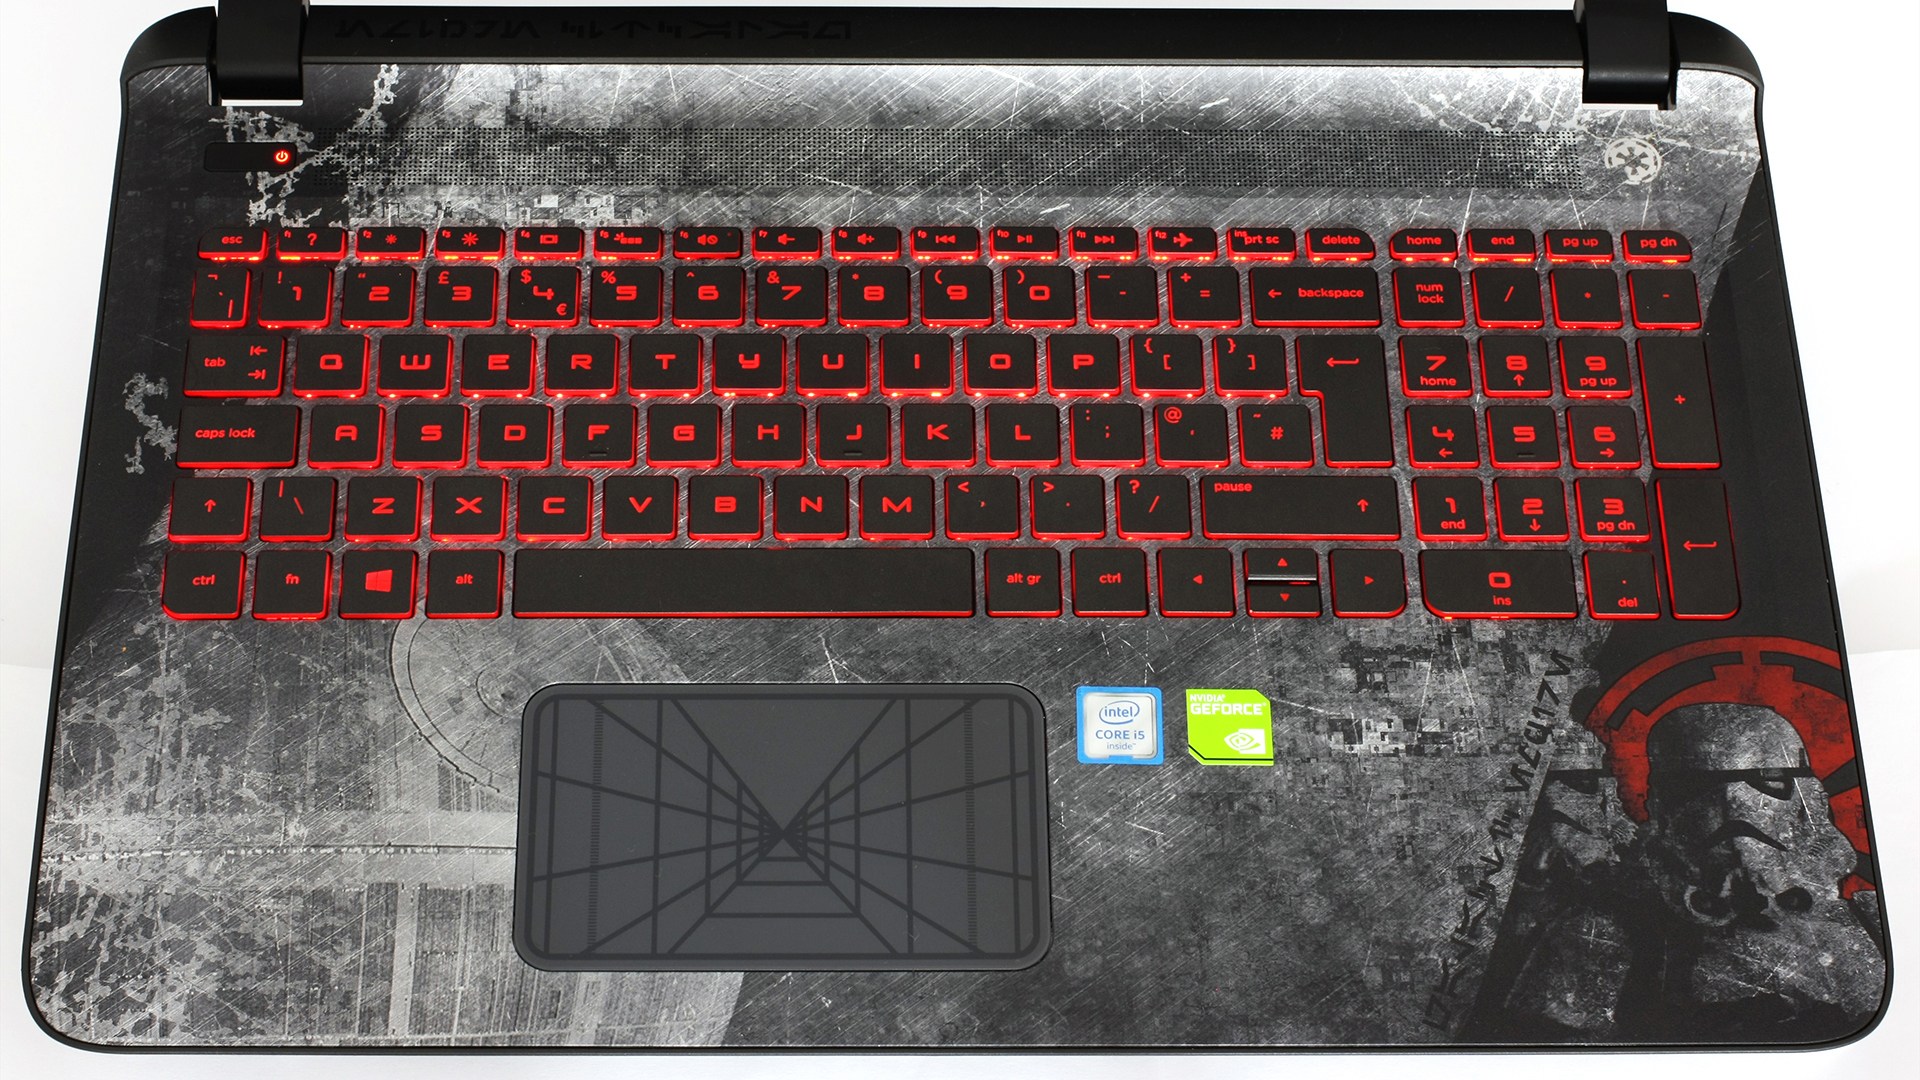 Star Wars Laptop Keyboard - HD Wallpaper 